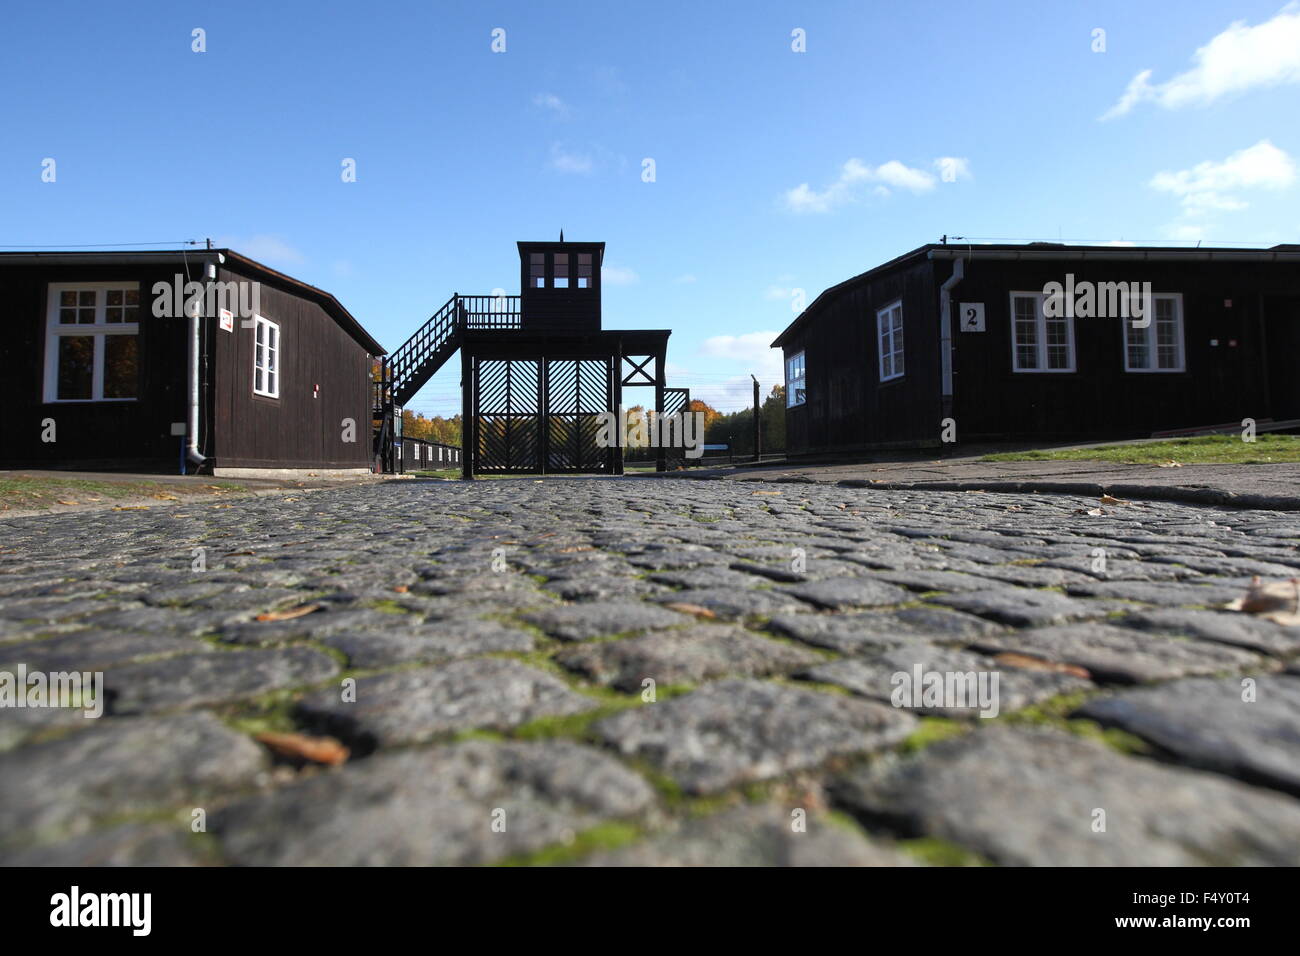 Sztutowo 24. Okt. 2015 Hunderte von Schuhen und Kleidungsstücken wurden im Wald in der Nähe von ehemaligen deutschen Konzentrationslager Stutthof in Sztutowo, Nordpolen gefunden. Die Elemente werden geglaubt, um Lagerinsassen gehört haben. In der Regel wurden neue Häftlinge von Konzentrationslagern ihrer Kleidung und ihres Besitzes bei der Ankunft gestrippt. Etwa 65.000 Insassen starben im Vernichtungslager Stutthof fungierte von September 1939 bis Mai 1945. Im Bild: Eingang zum deutschen Nazi-Tod Lager Stutthof und so genannte Death Gate Credit: Michal Fludra/Alamy Live News Stockfoto